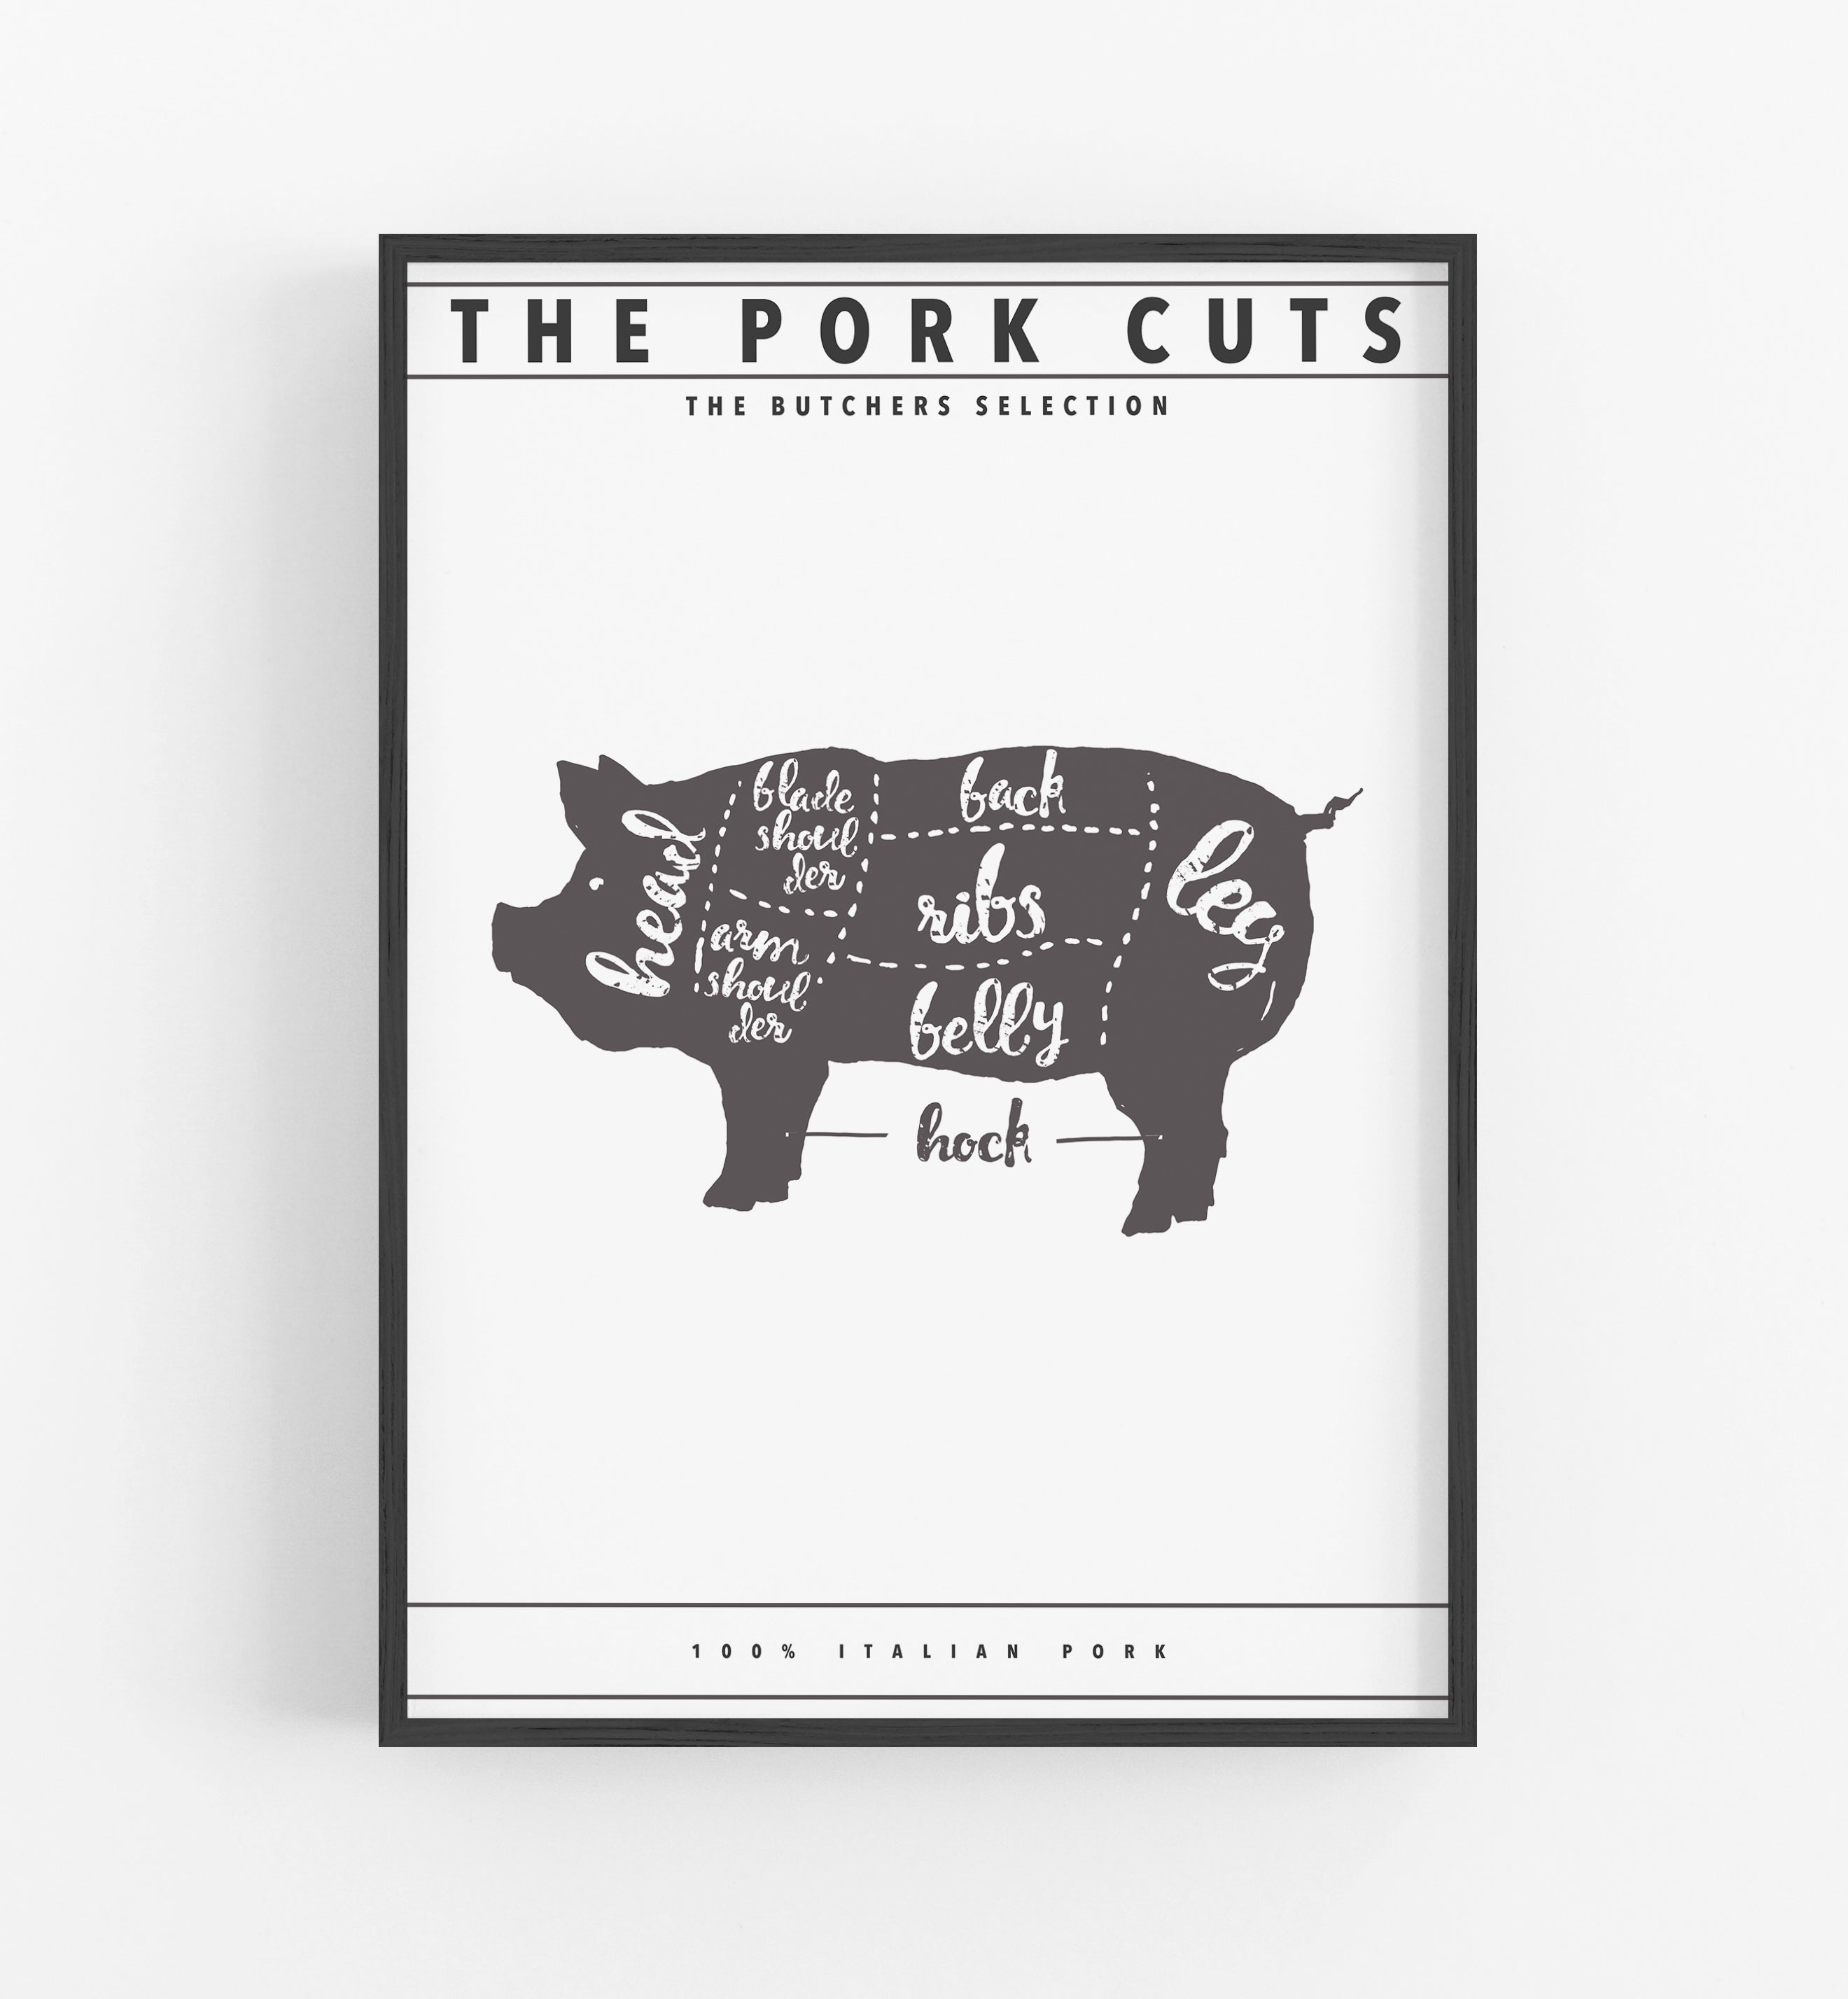 The pork cuts